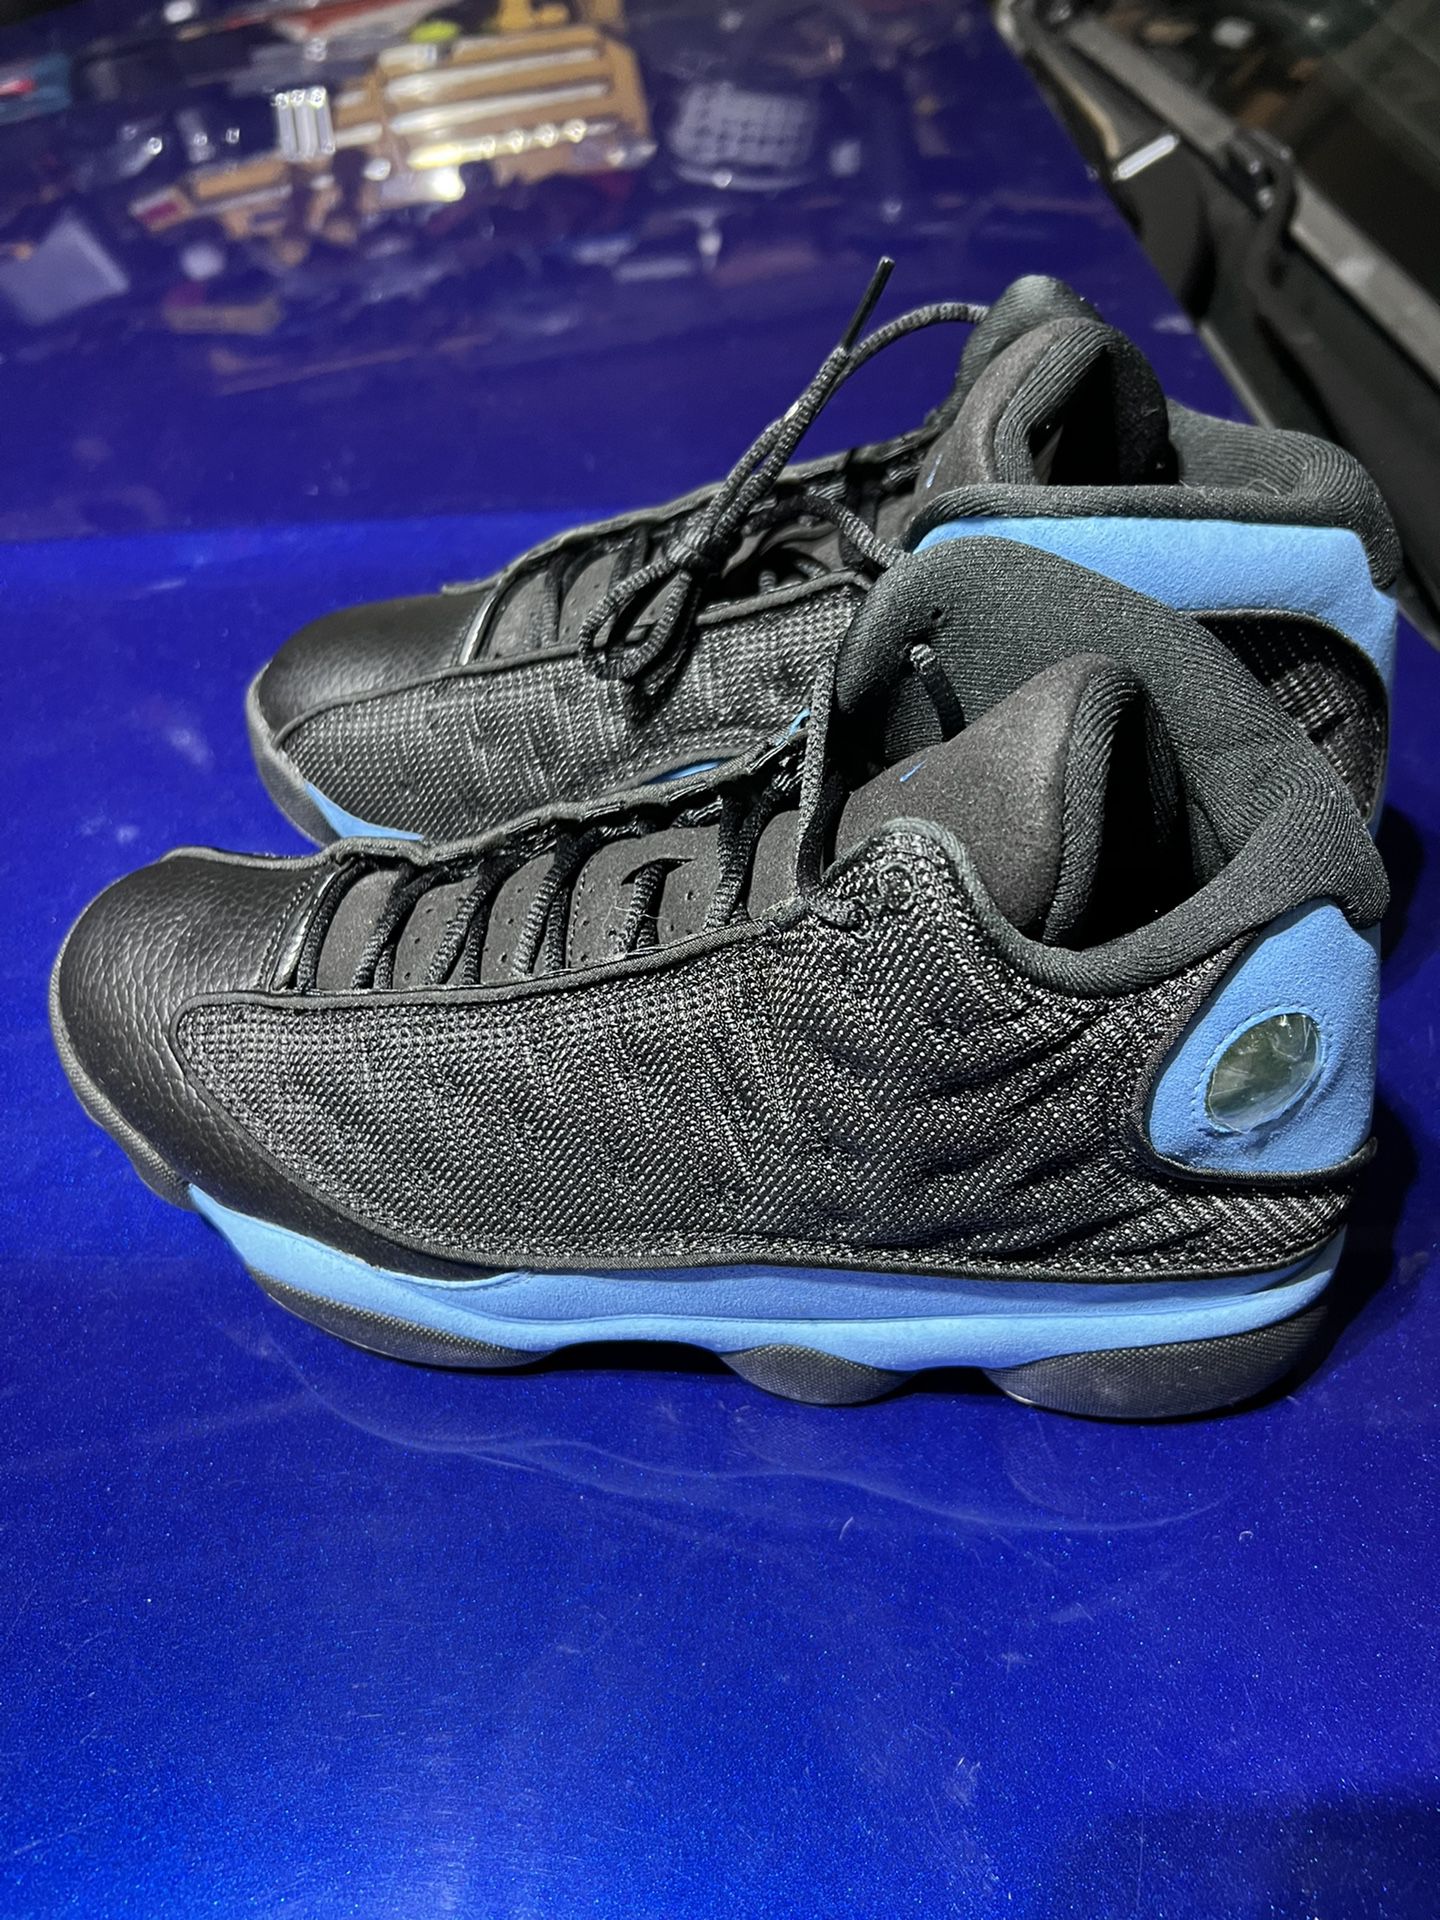 Jordan 13 Retro Black University Blue Size 12